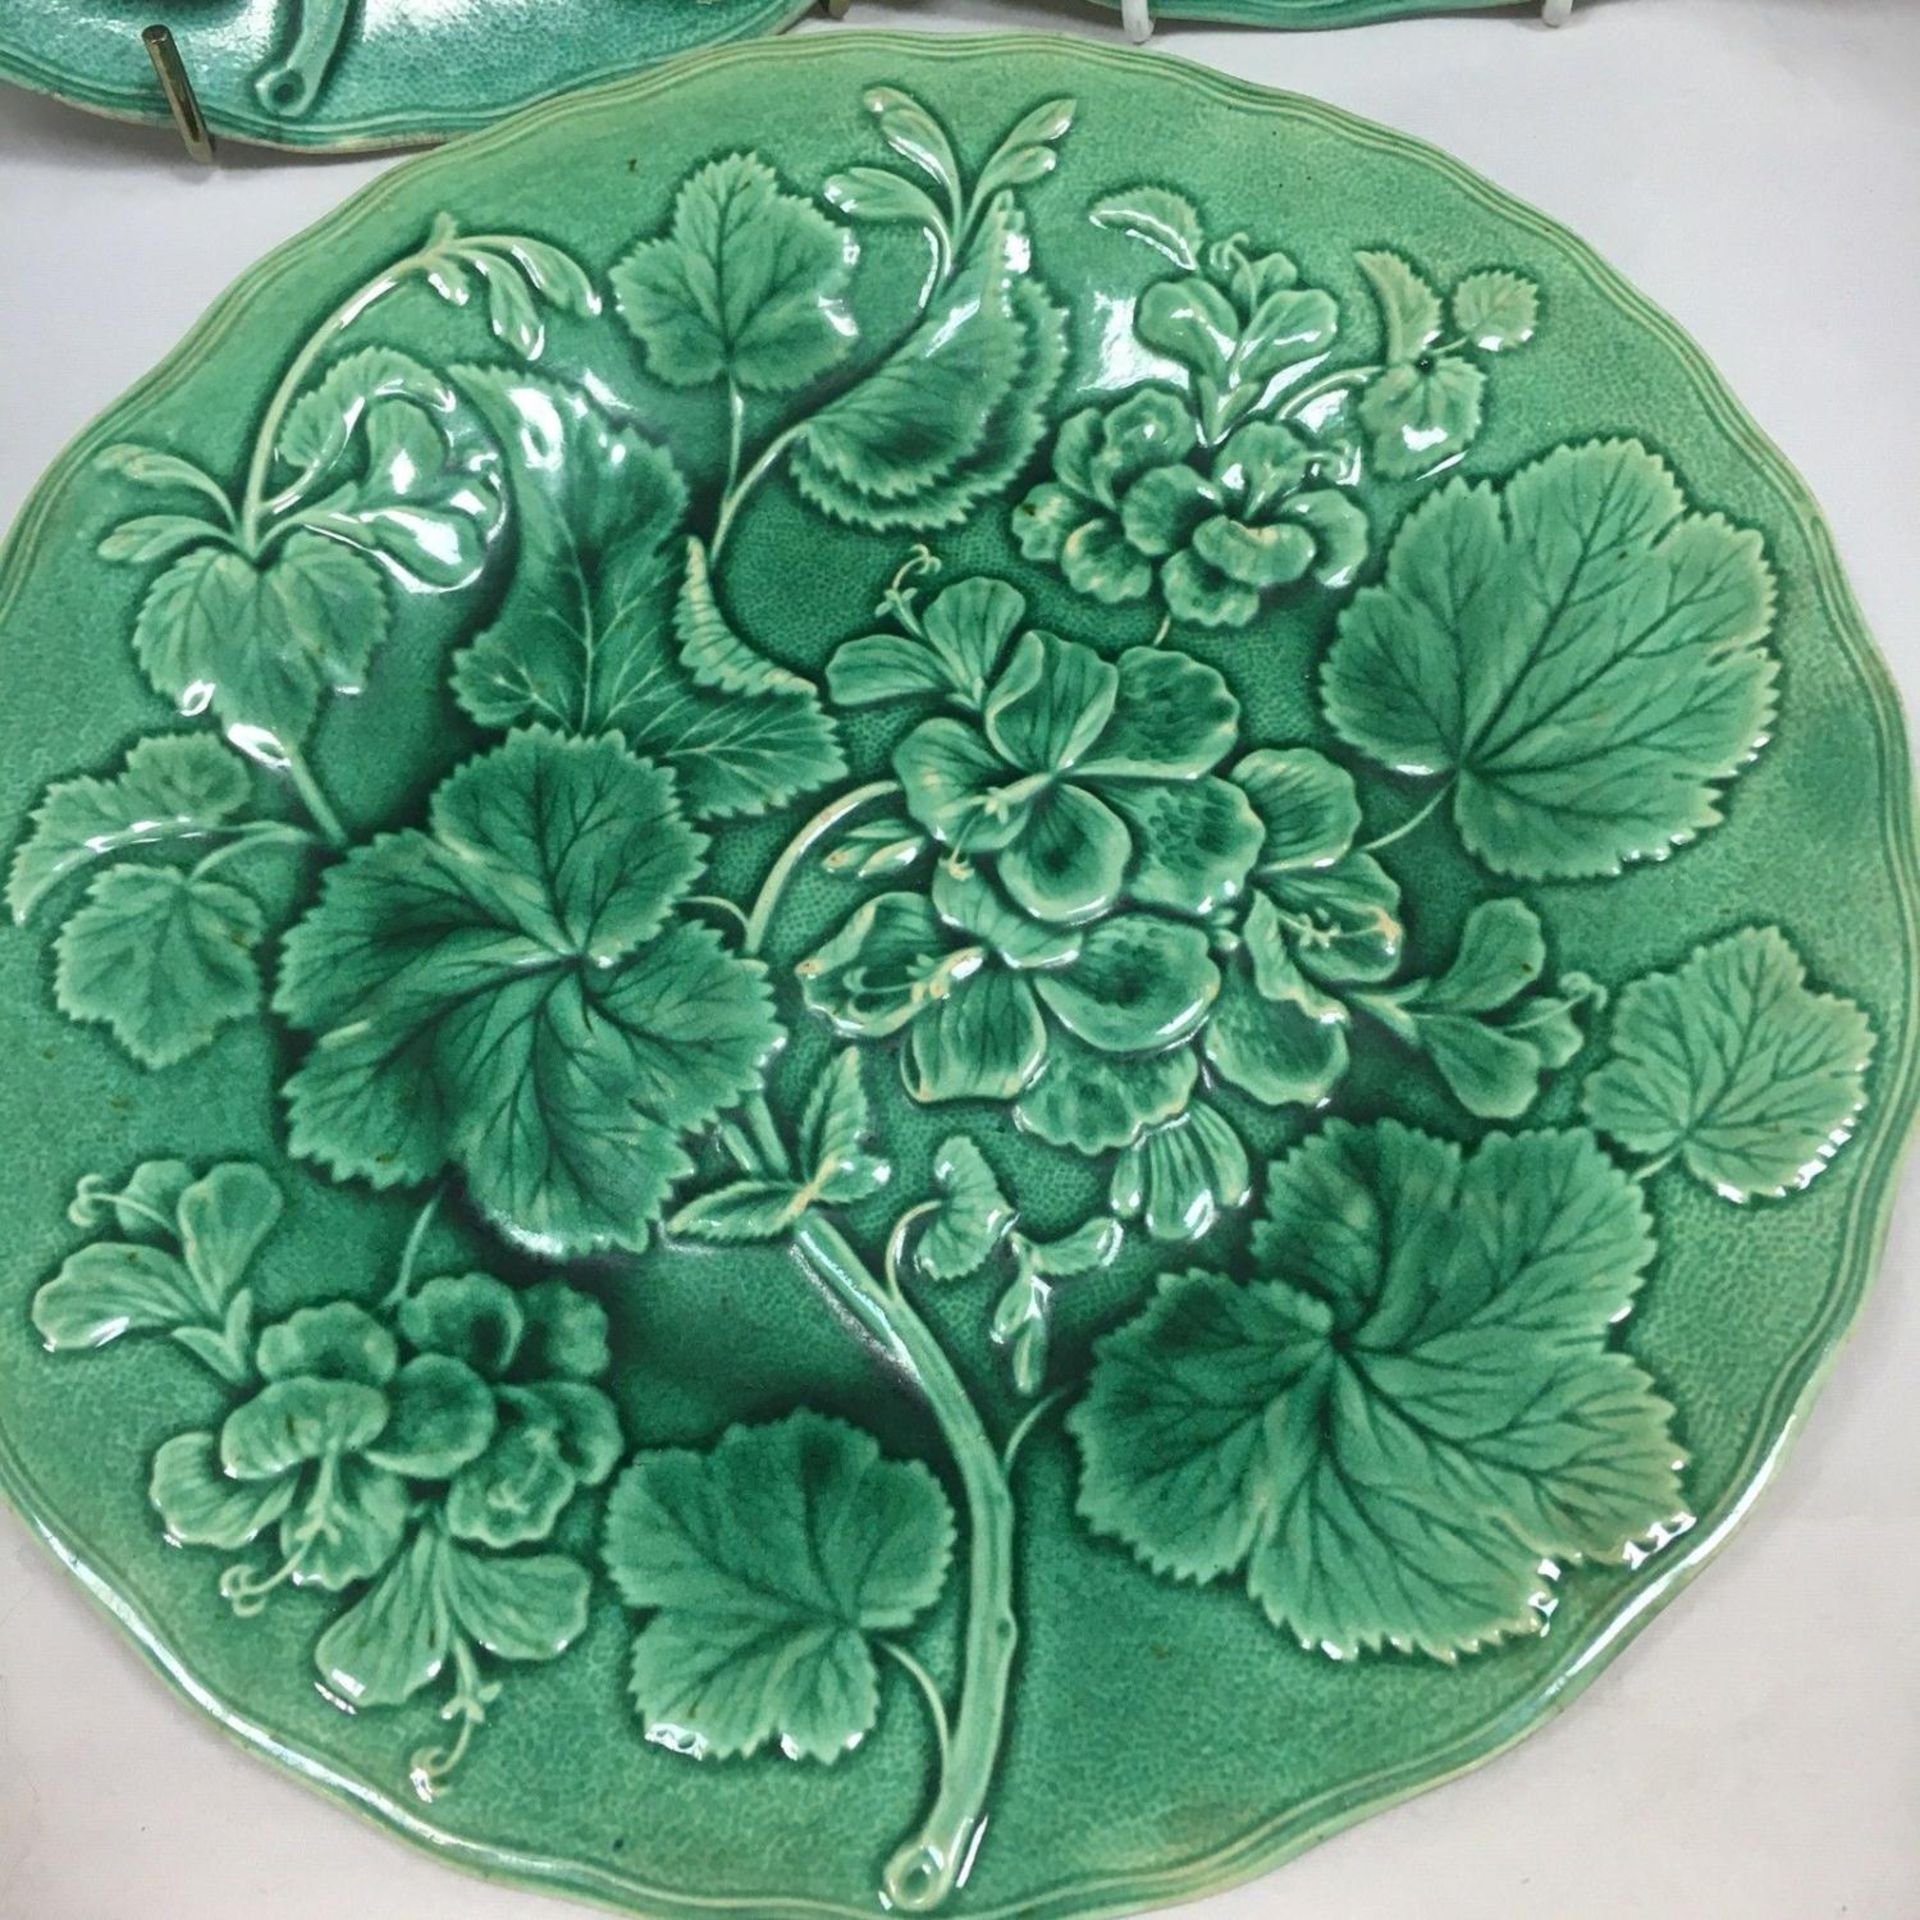 3 Rare Antique 19th Century Majolica Green Geranium Dessert Plates by Hope & Carter - Image 2 of 3